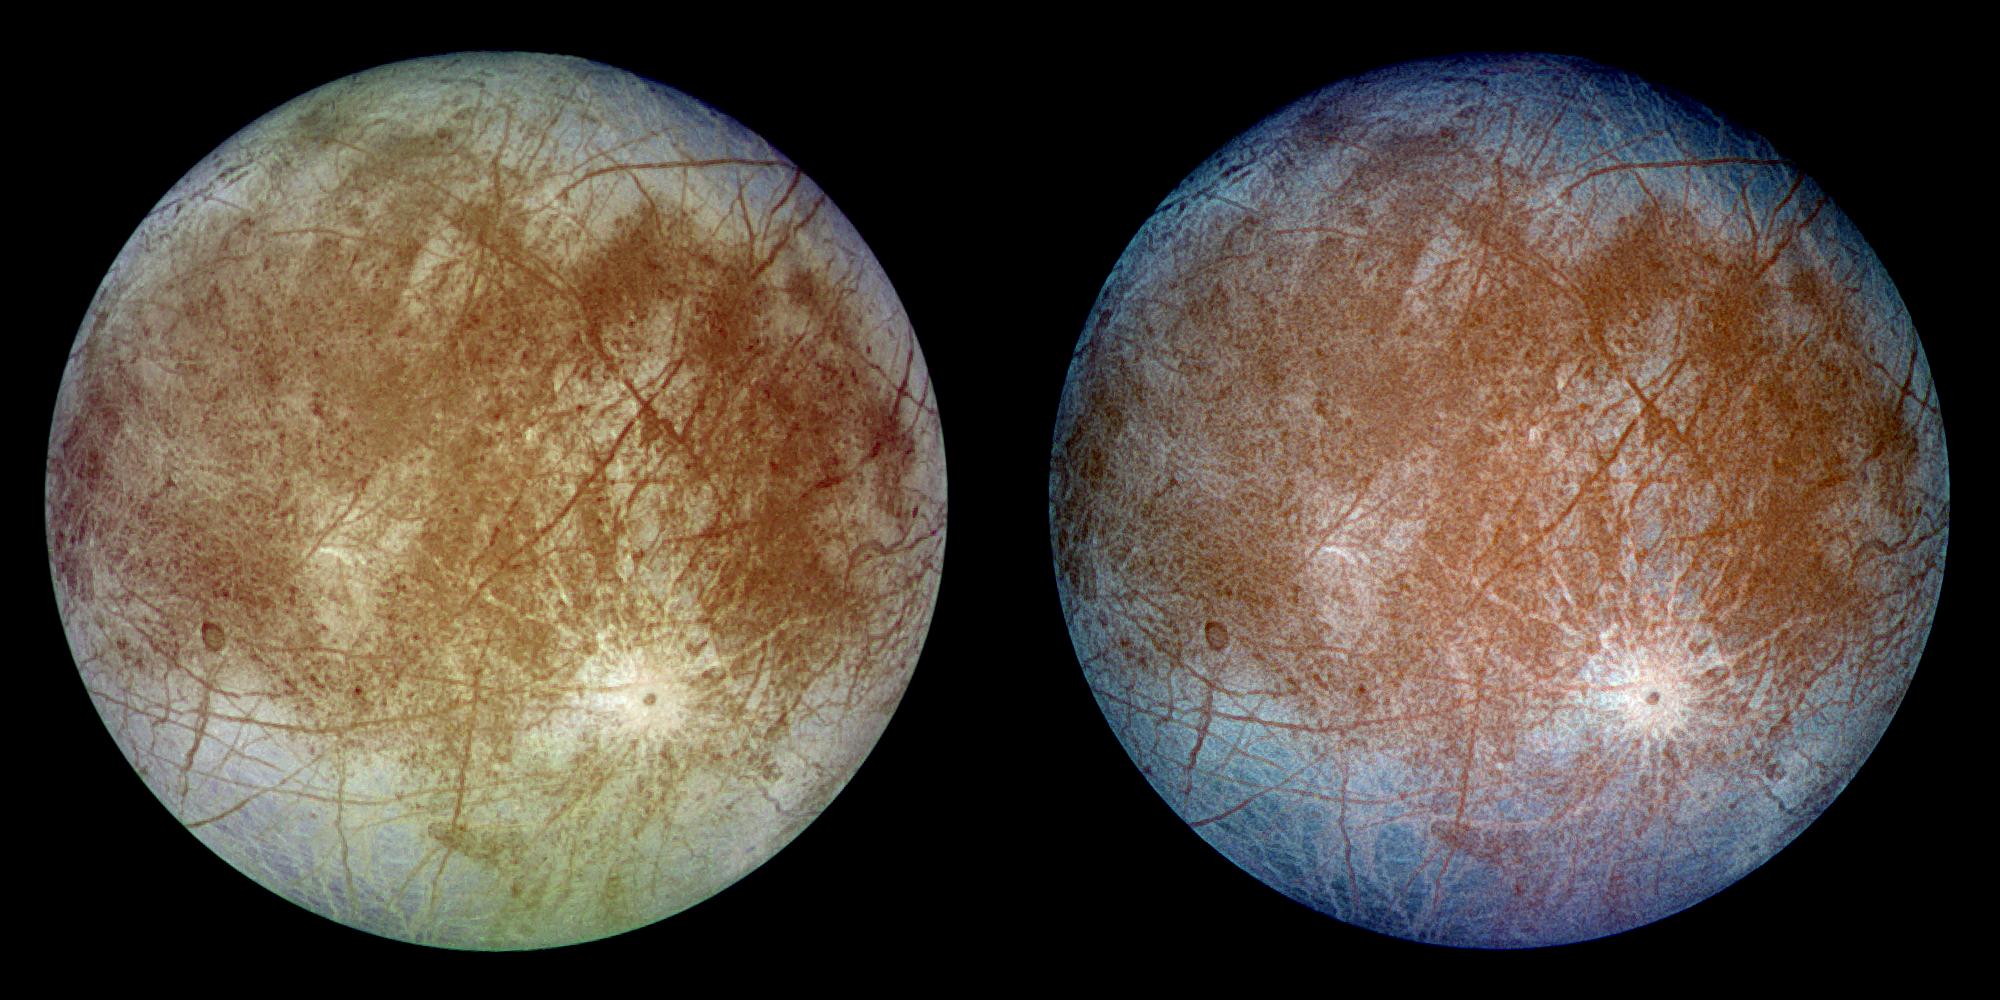 Jupiter's moon Europa. Credit: NASA